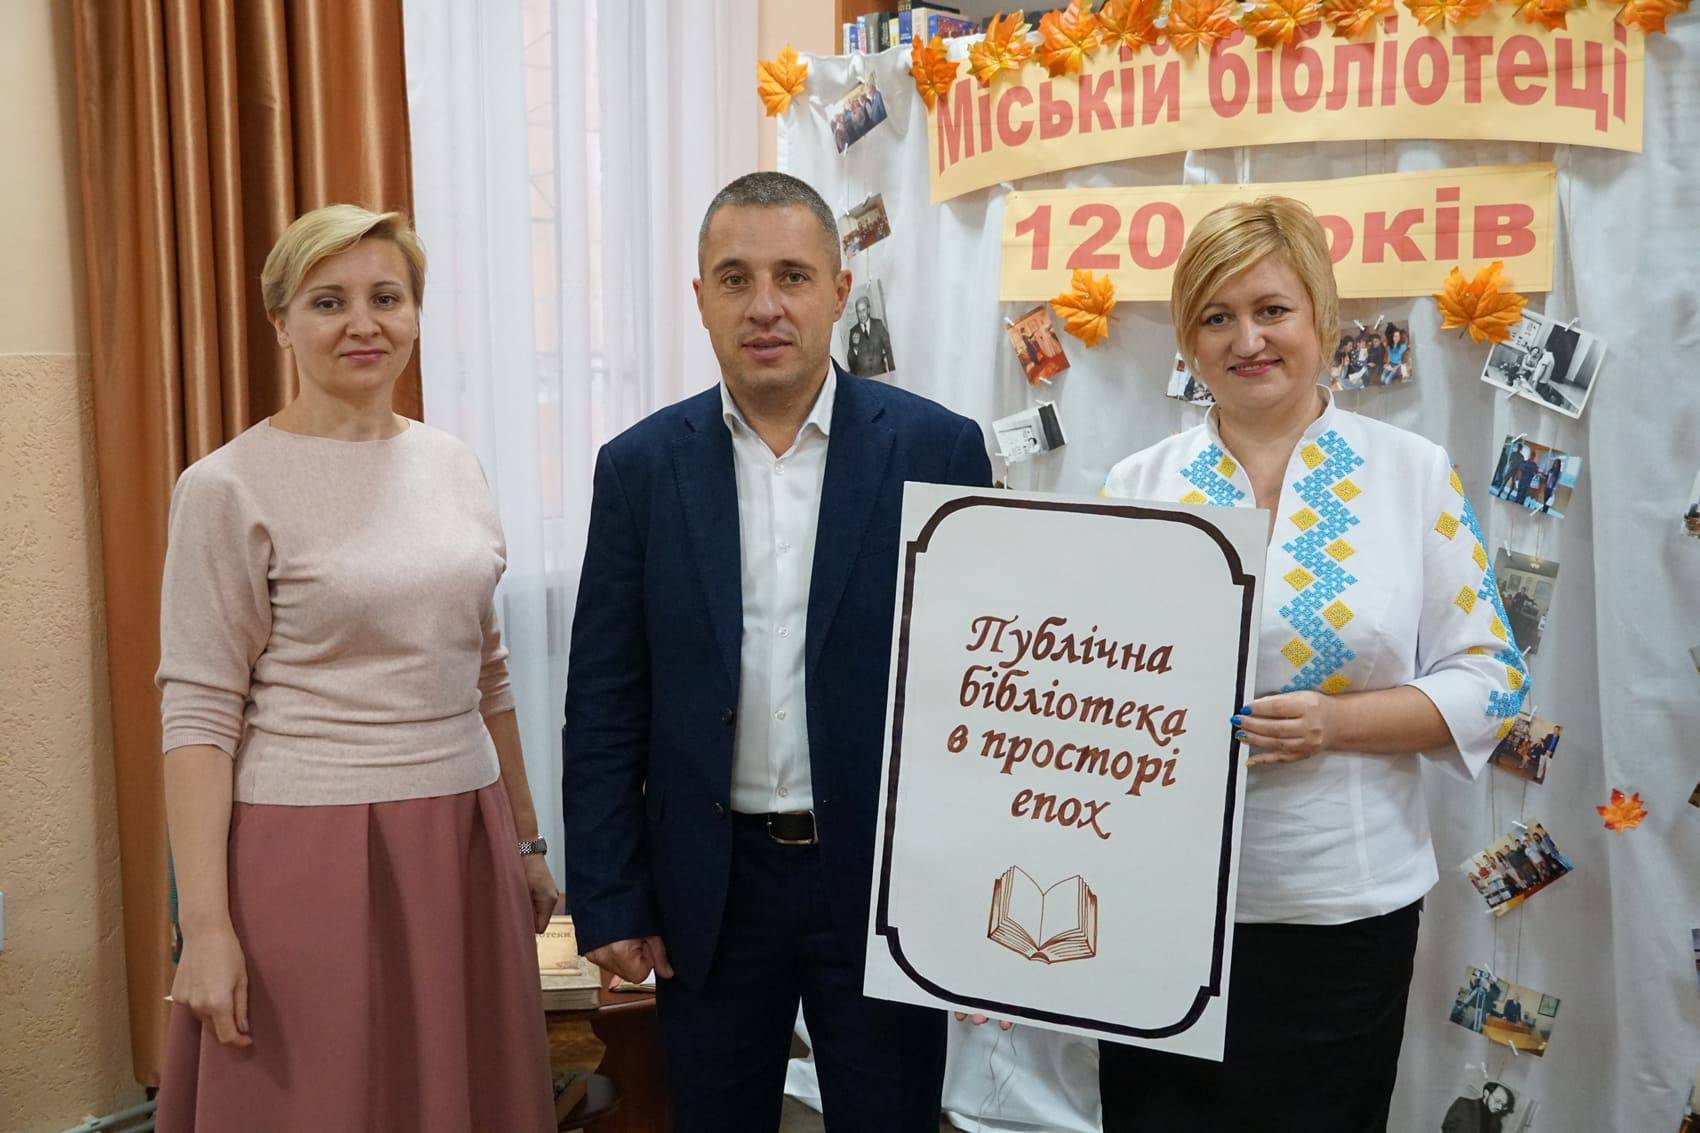 Ужгородській міській бібліотеці – 120 років!